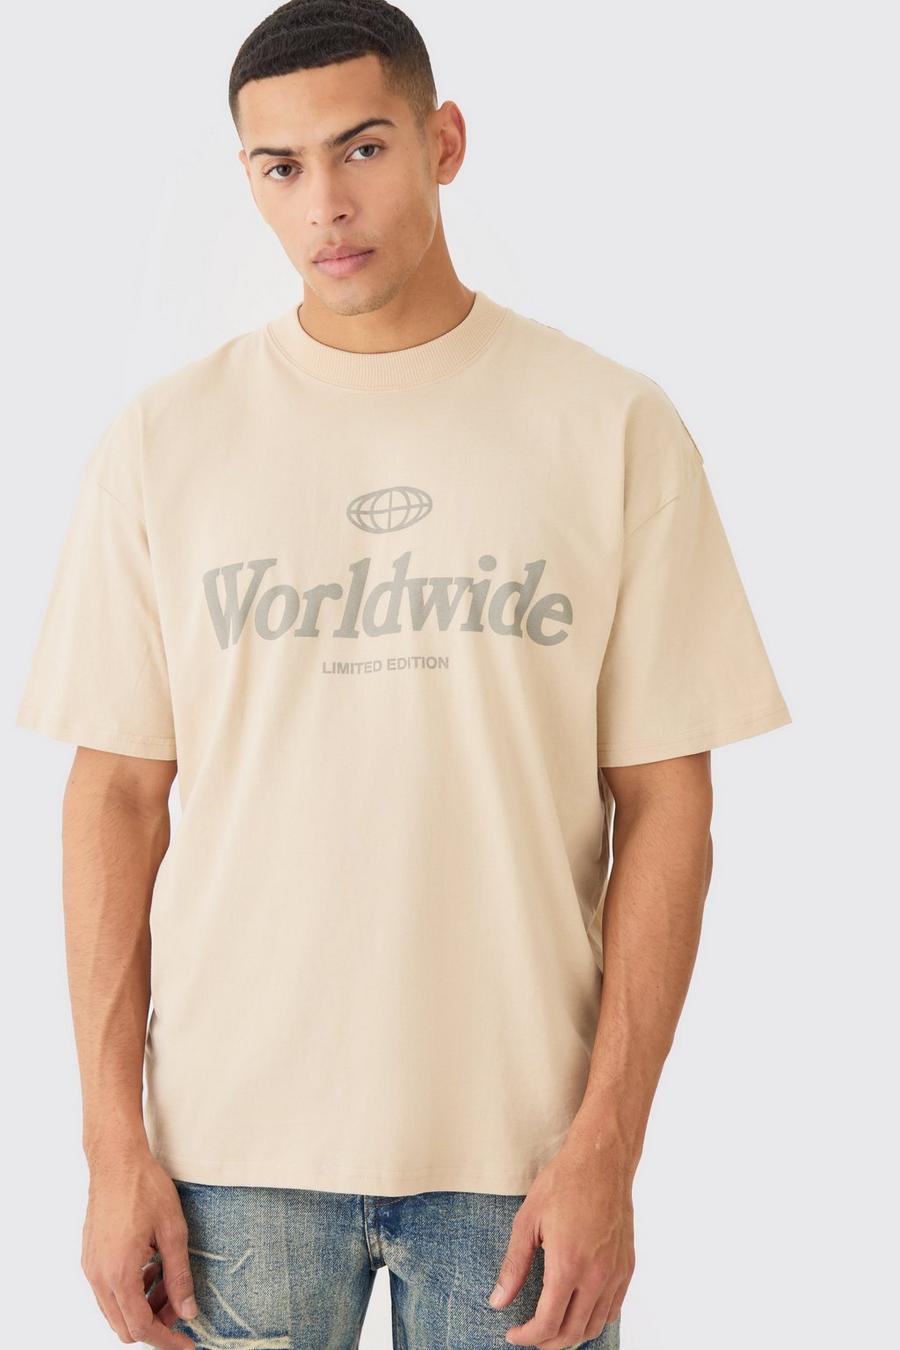 T-Shirt in Übergröße mit Worldwide-Print, Sand